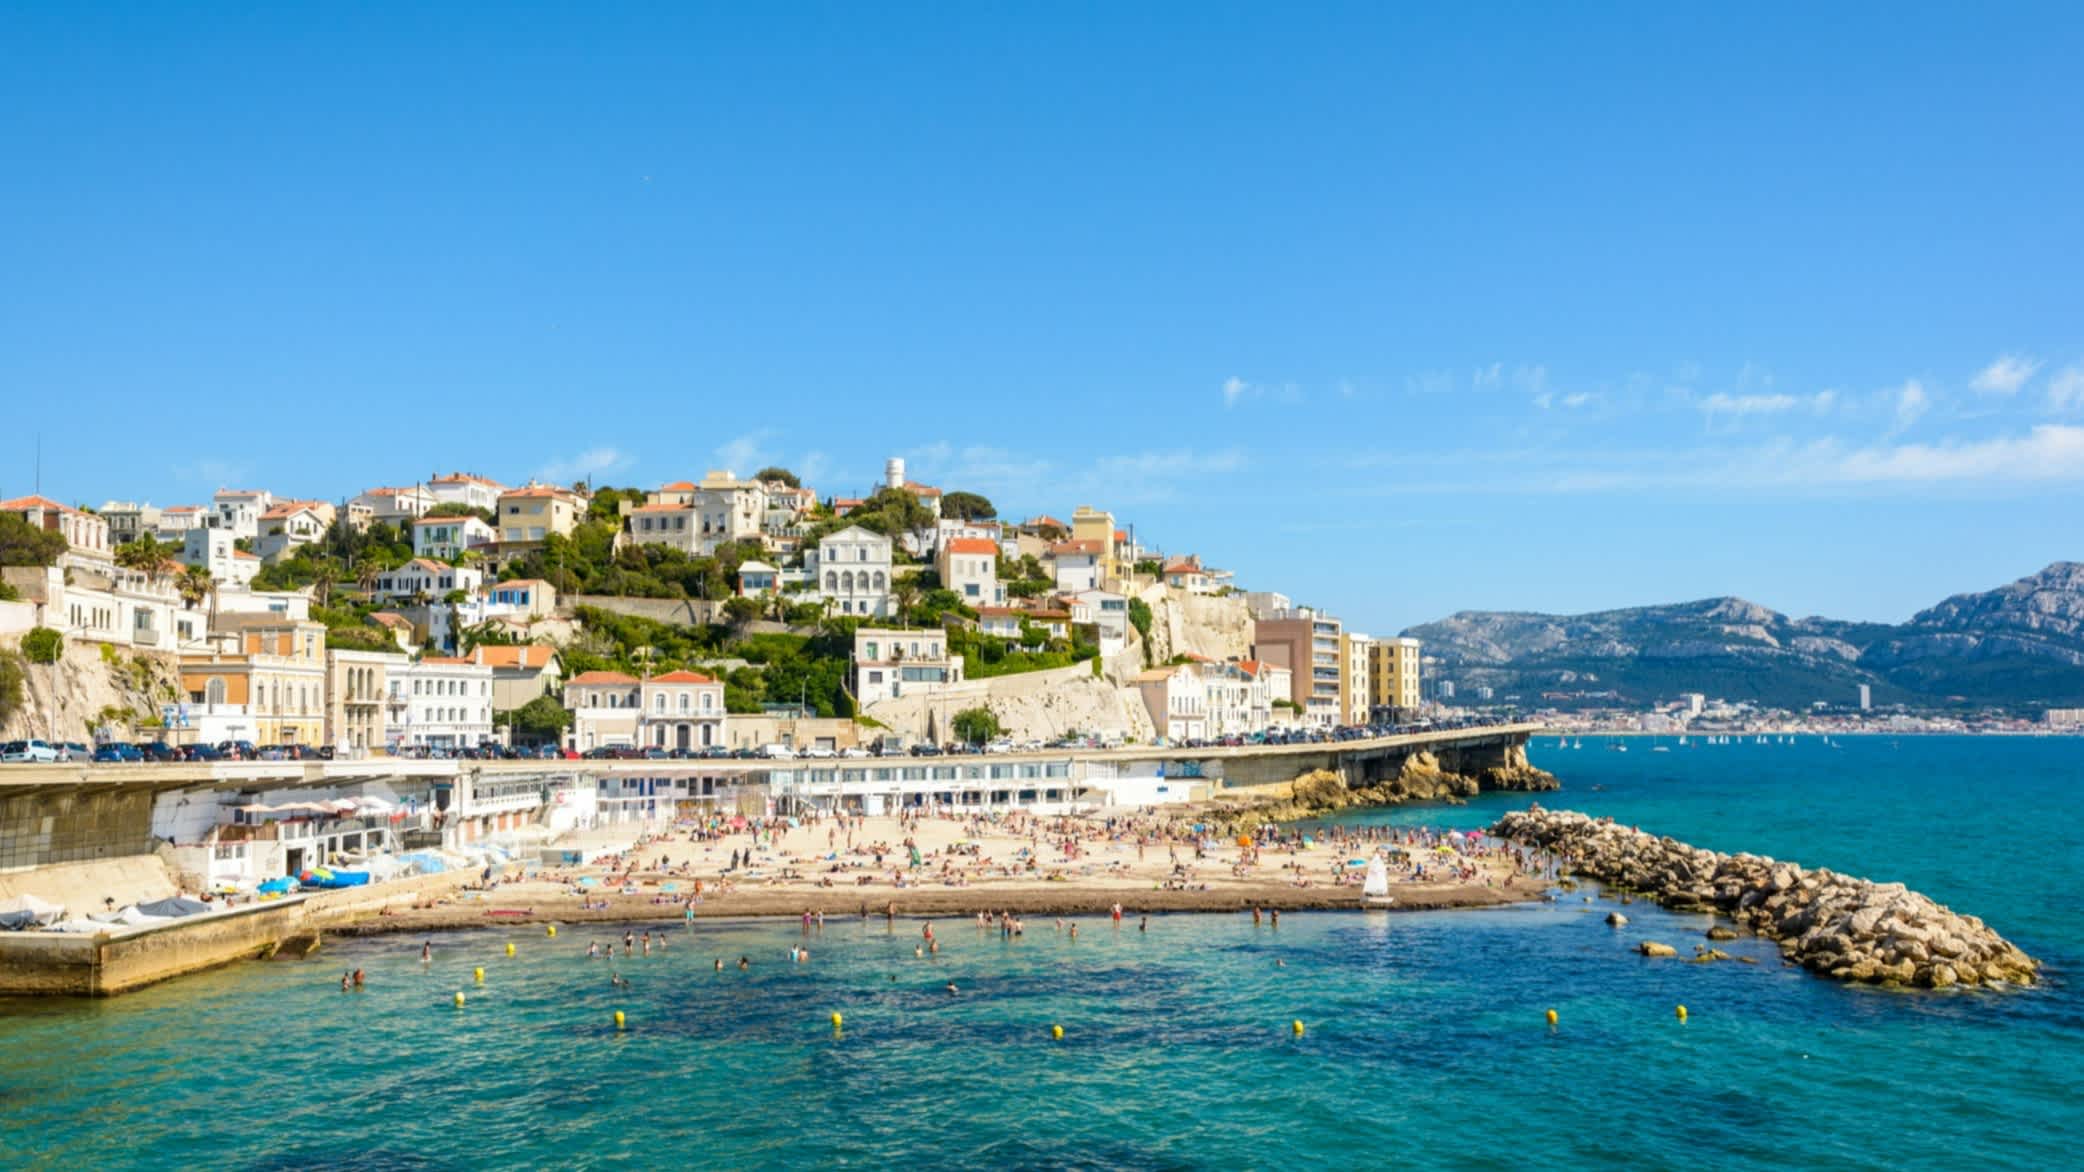 Vue de la plage du Prophète avec la ville de Marseille en arrière-plan, en France.

